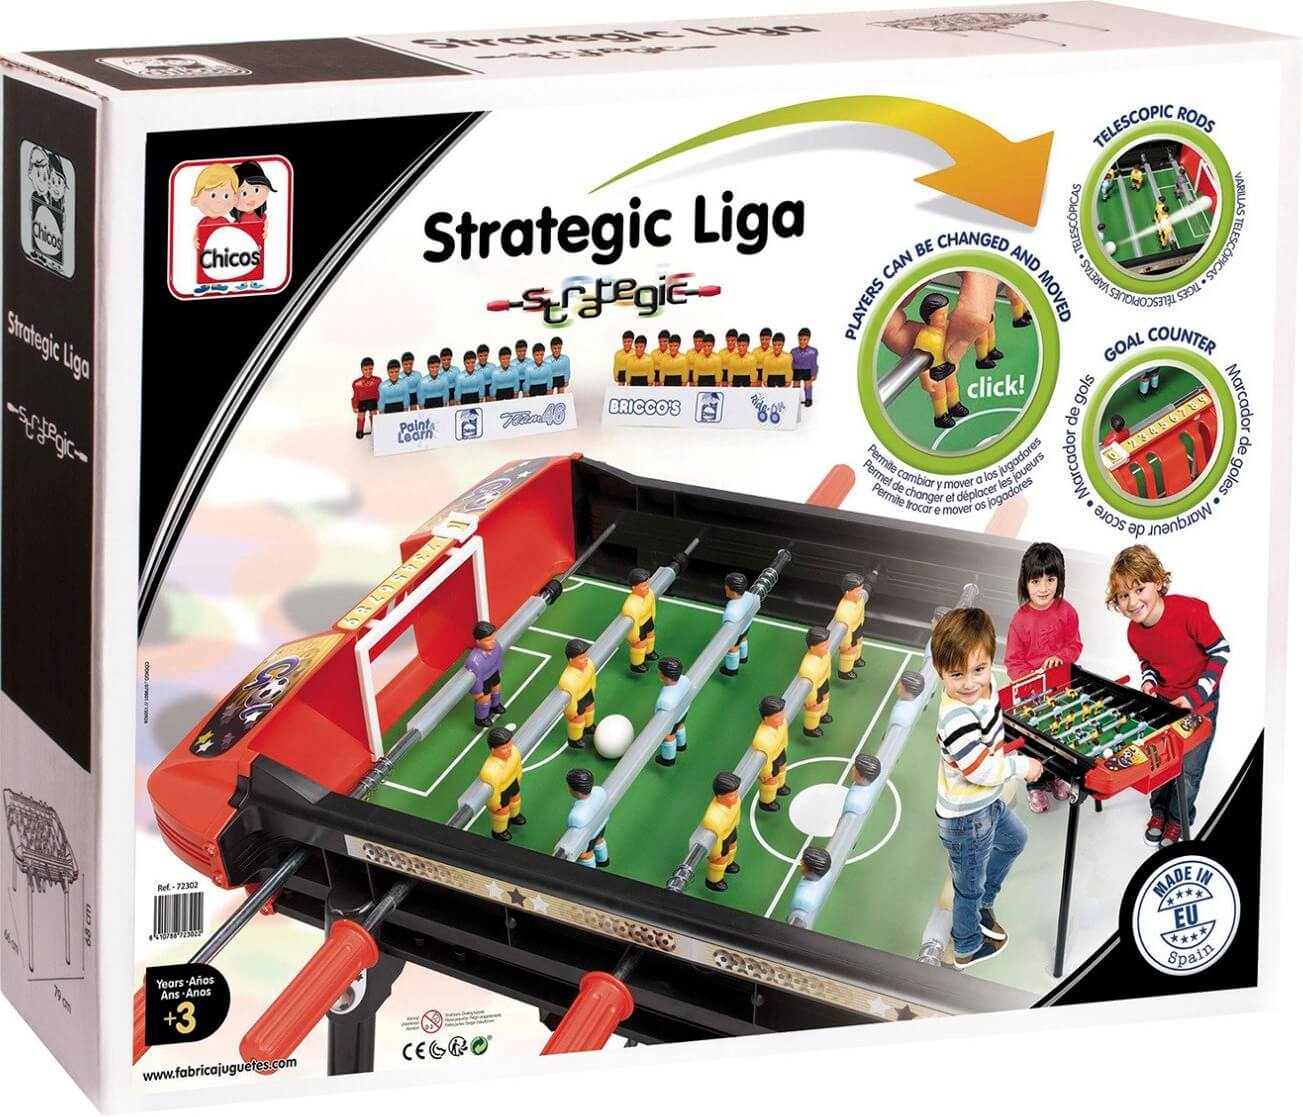 Futbolín Strategic Liga ( Chicos 72302 ) imagen f